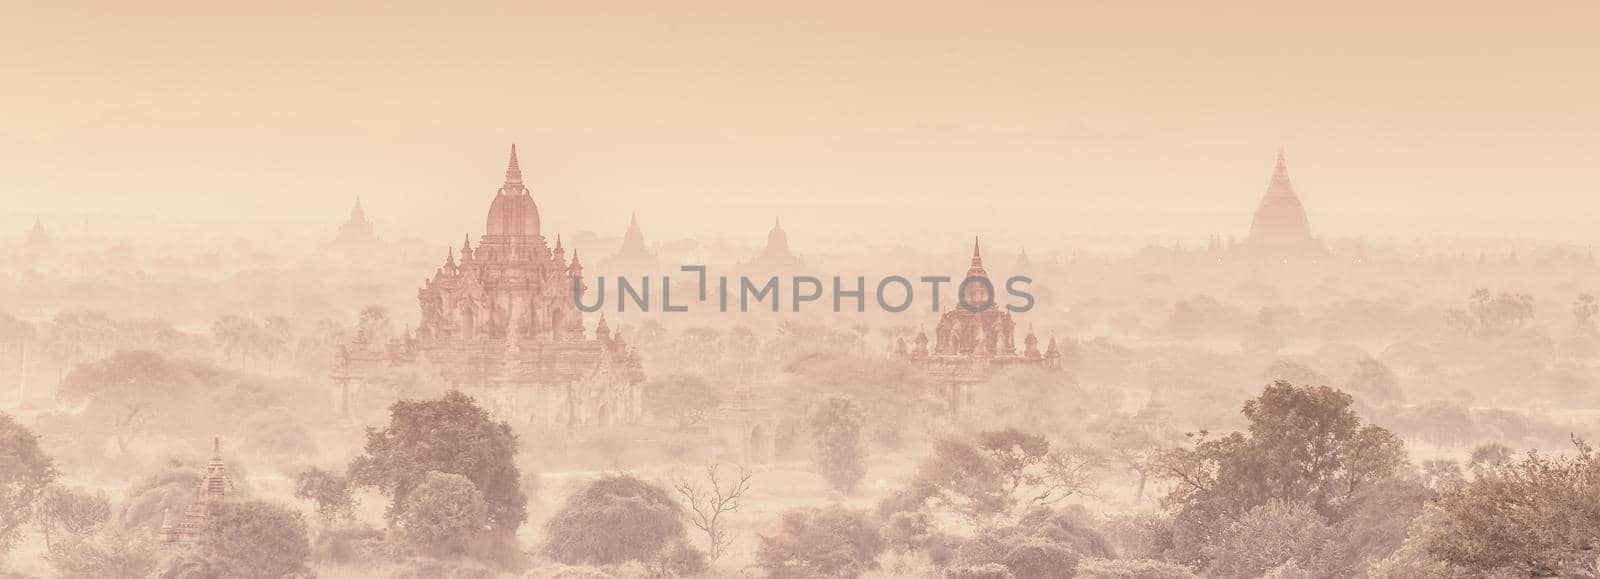 Temples of Bagan, Burma, Myanmar, Asia. by kasto